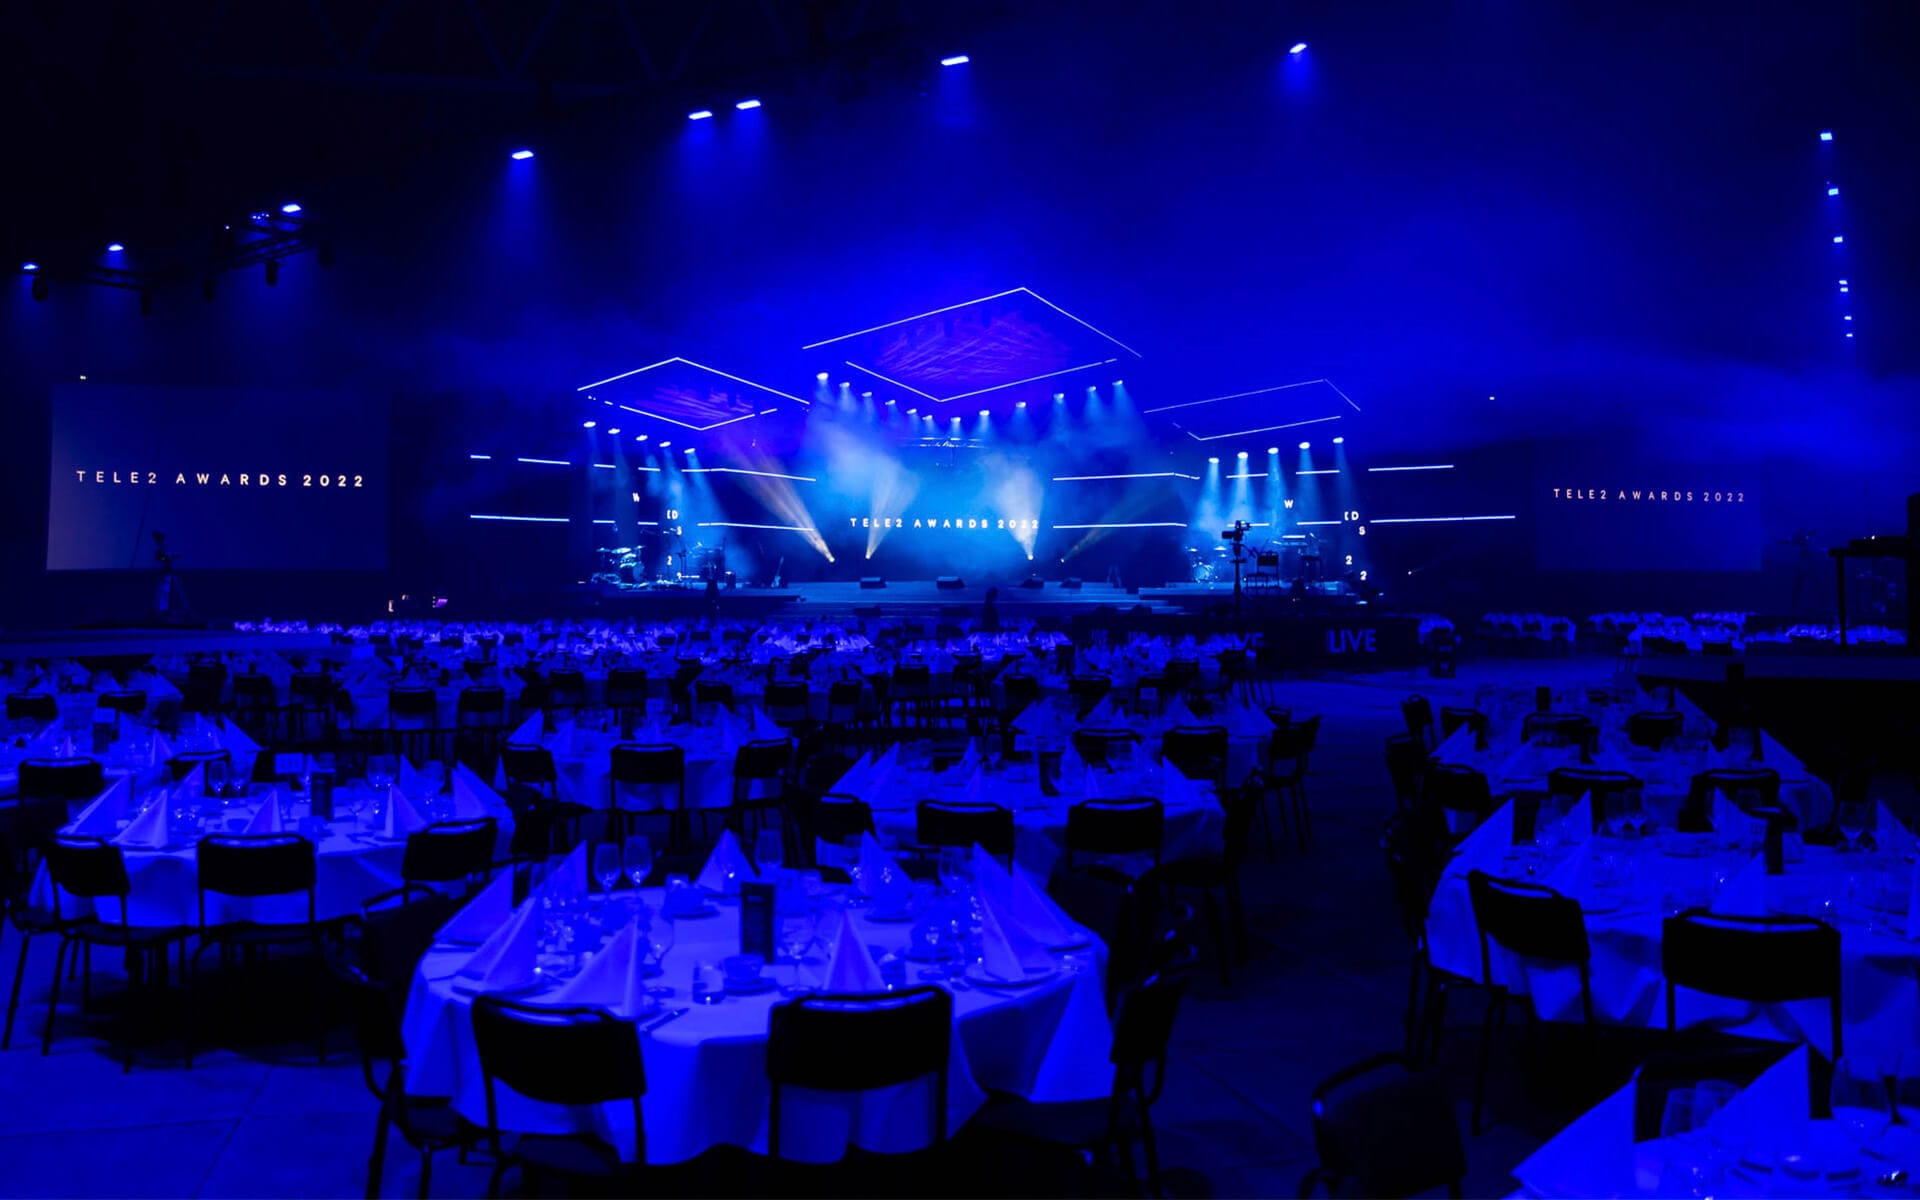 Tele2 Awards 2022 på Tele2 Arena